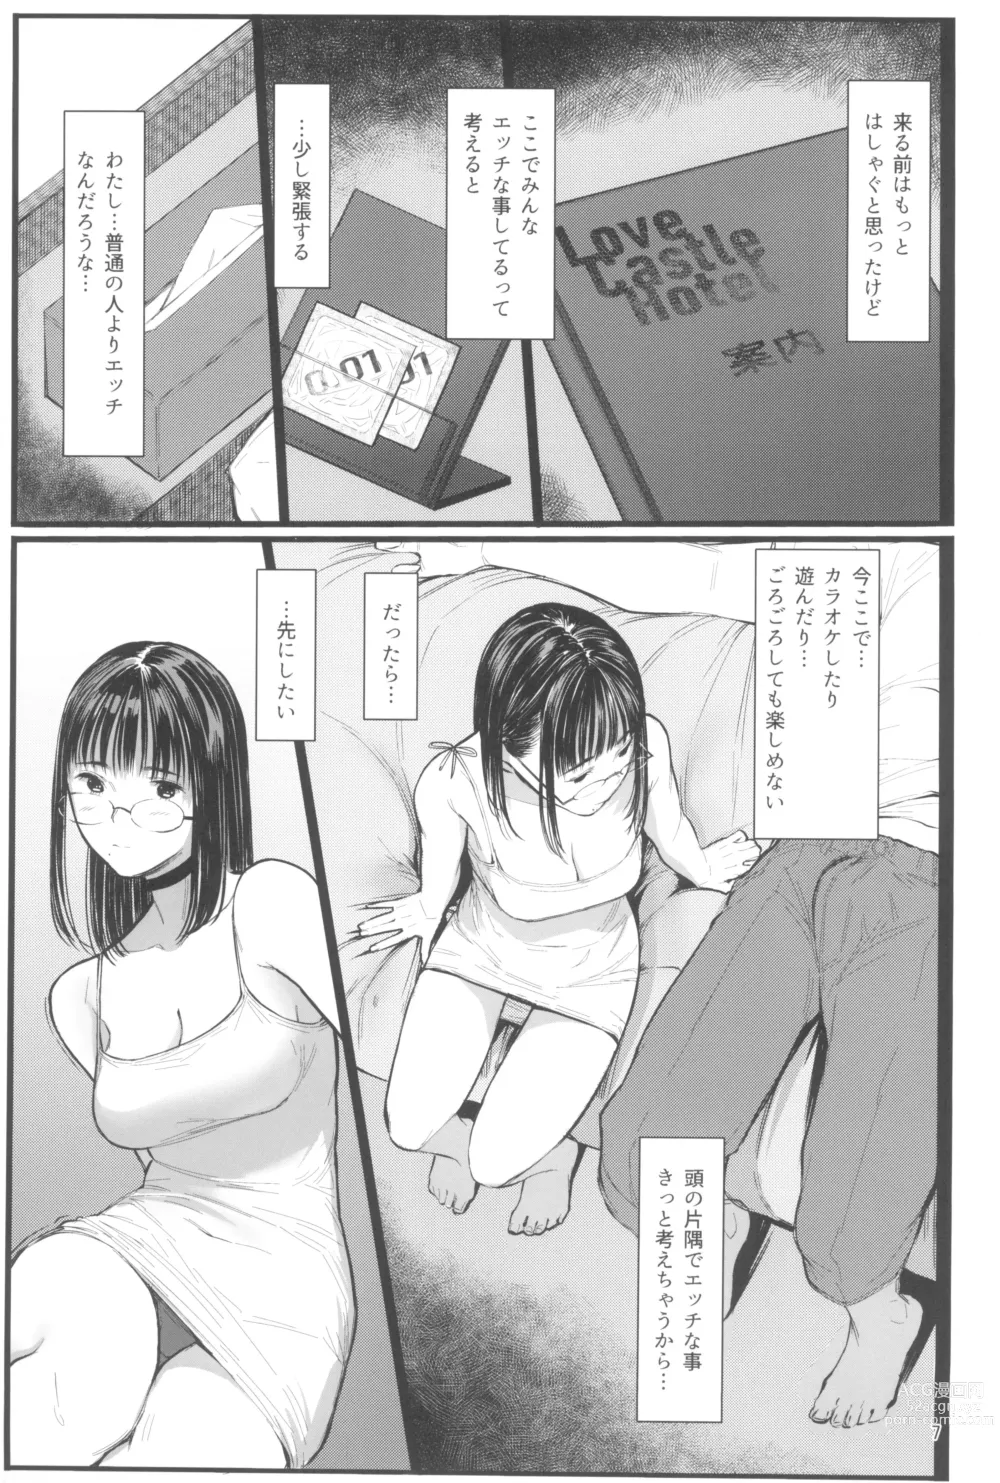 Page 7 of doujinshi Tonari no Chinatsu-chan R 07